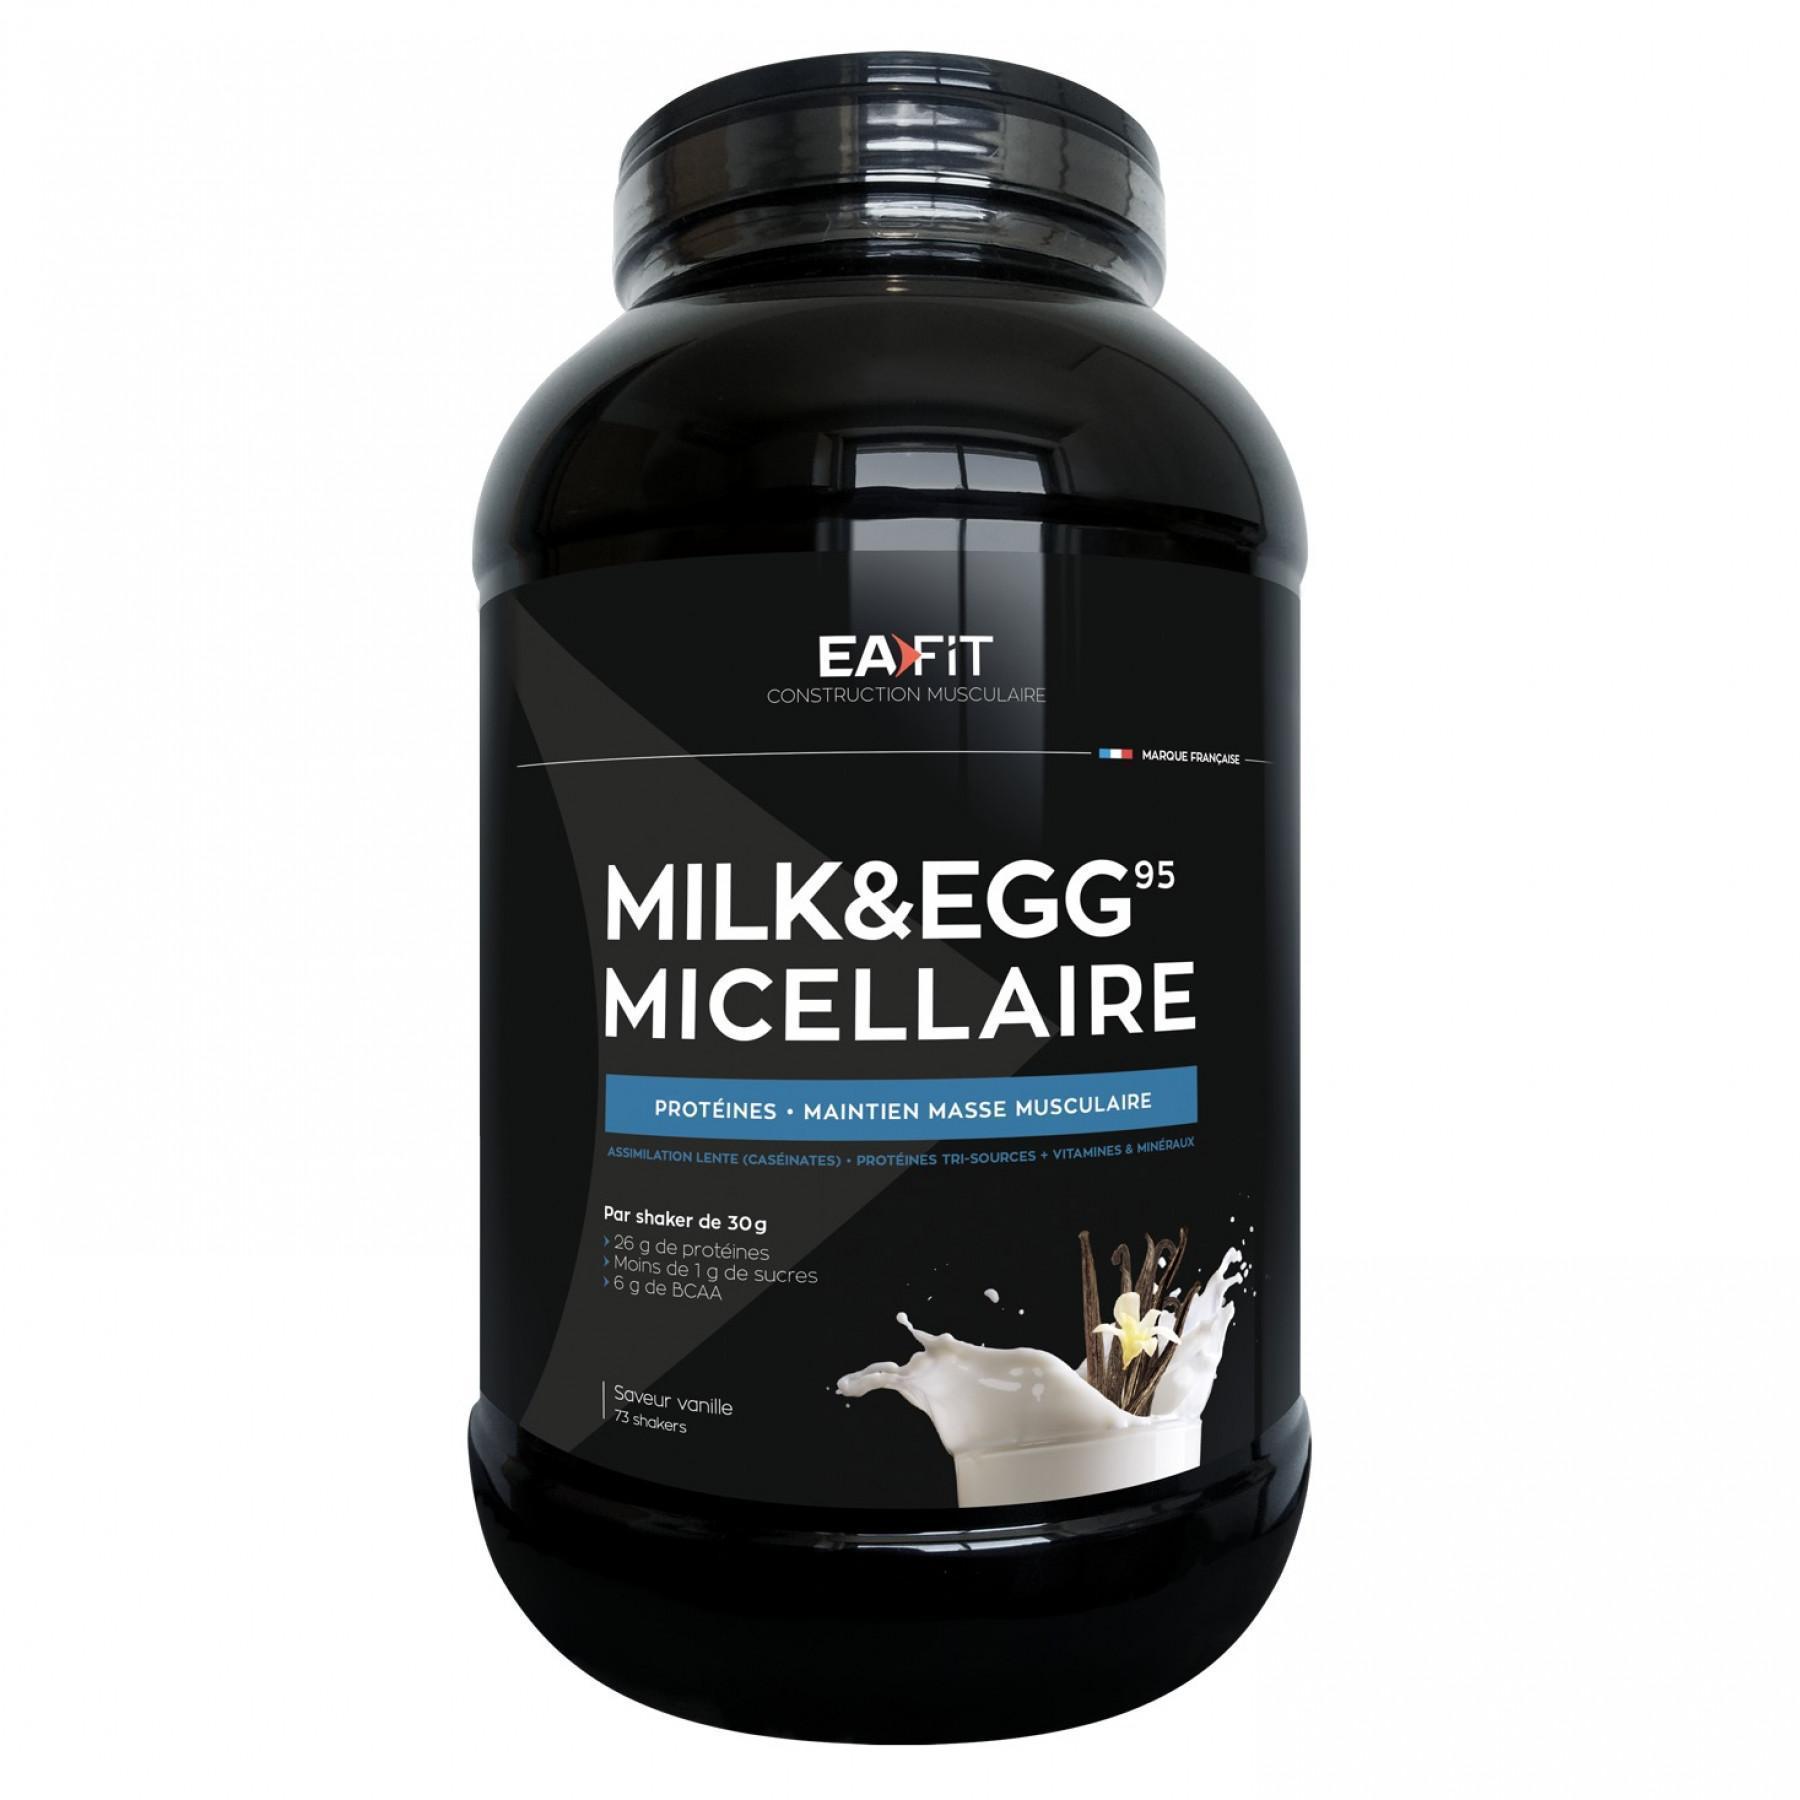 Mjölk & ägg 95 micellär vanilj EA Fit 2,2kg